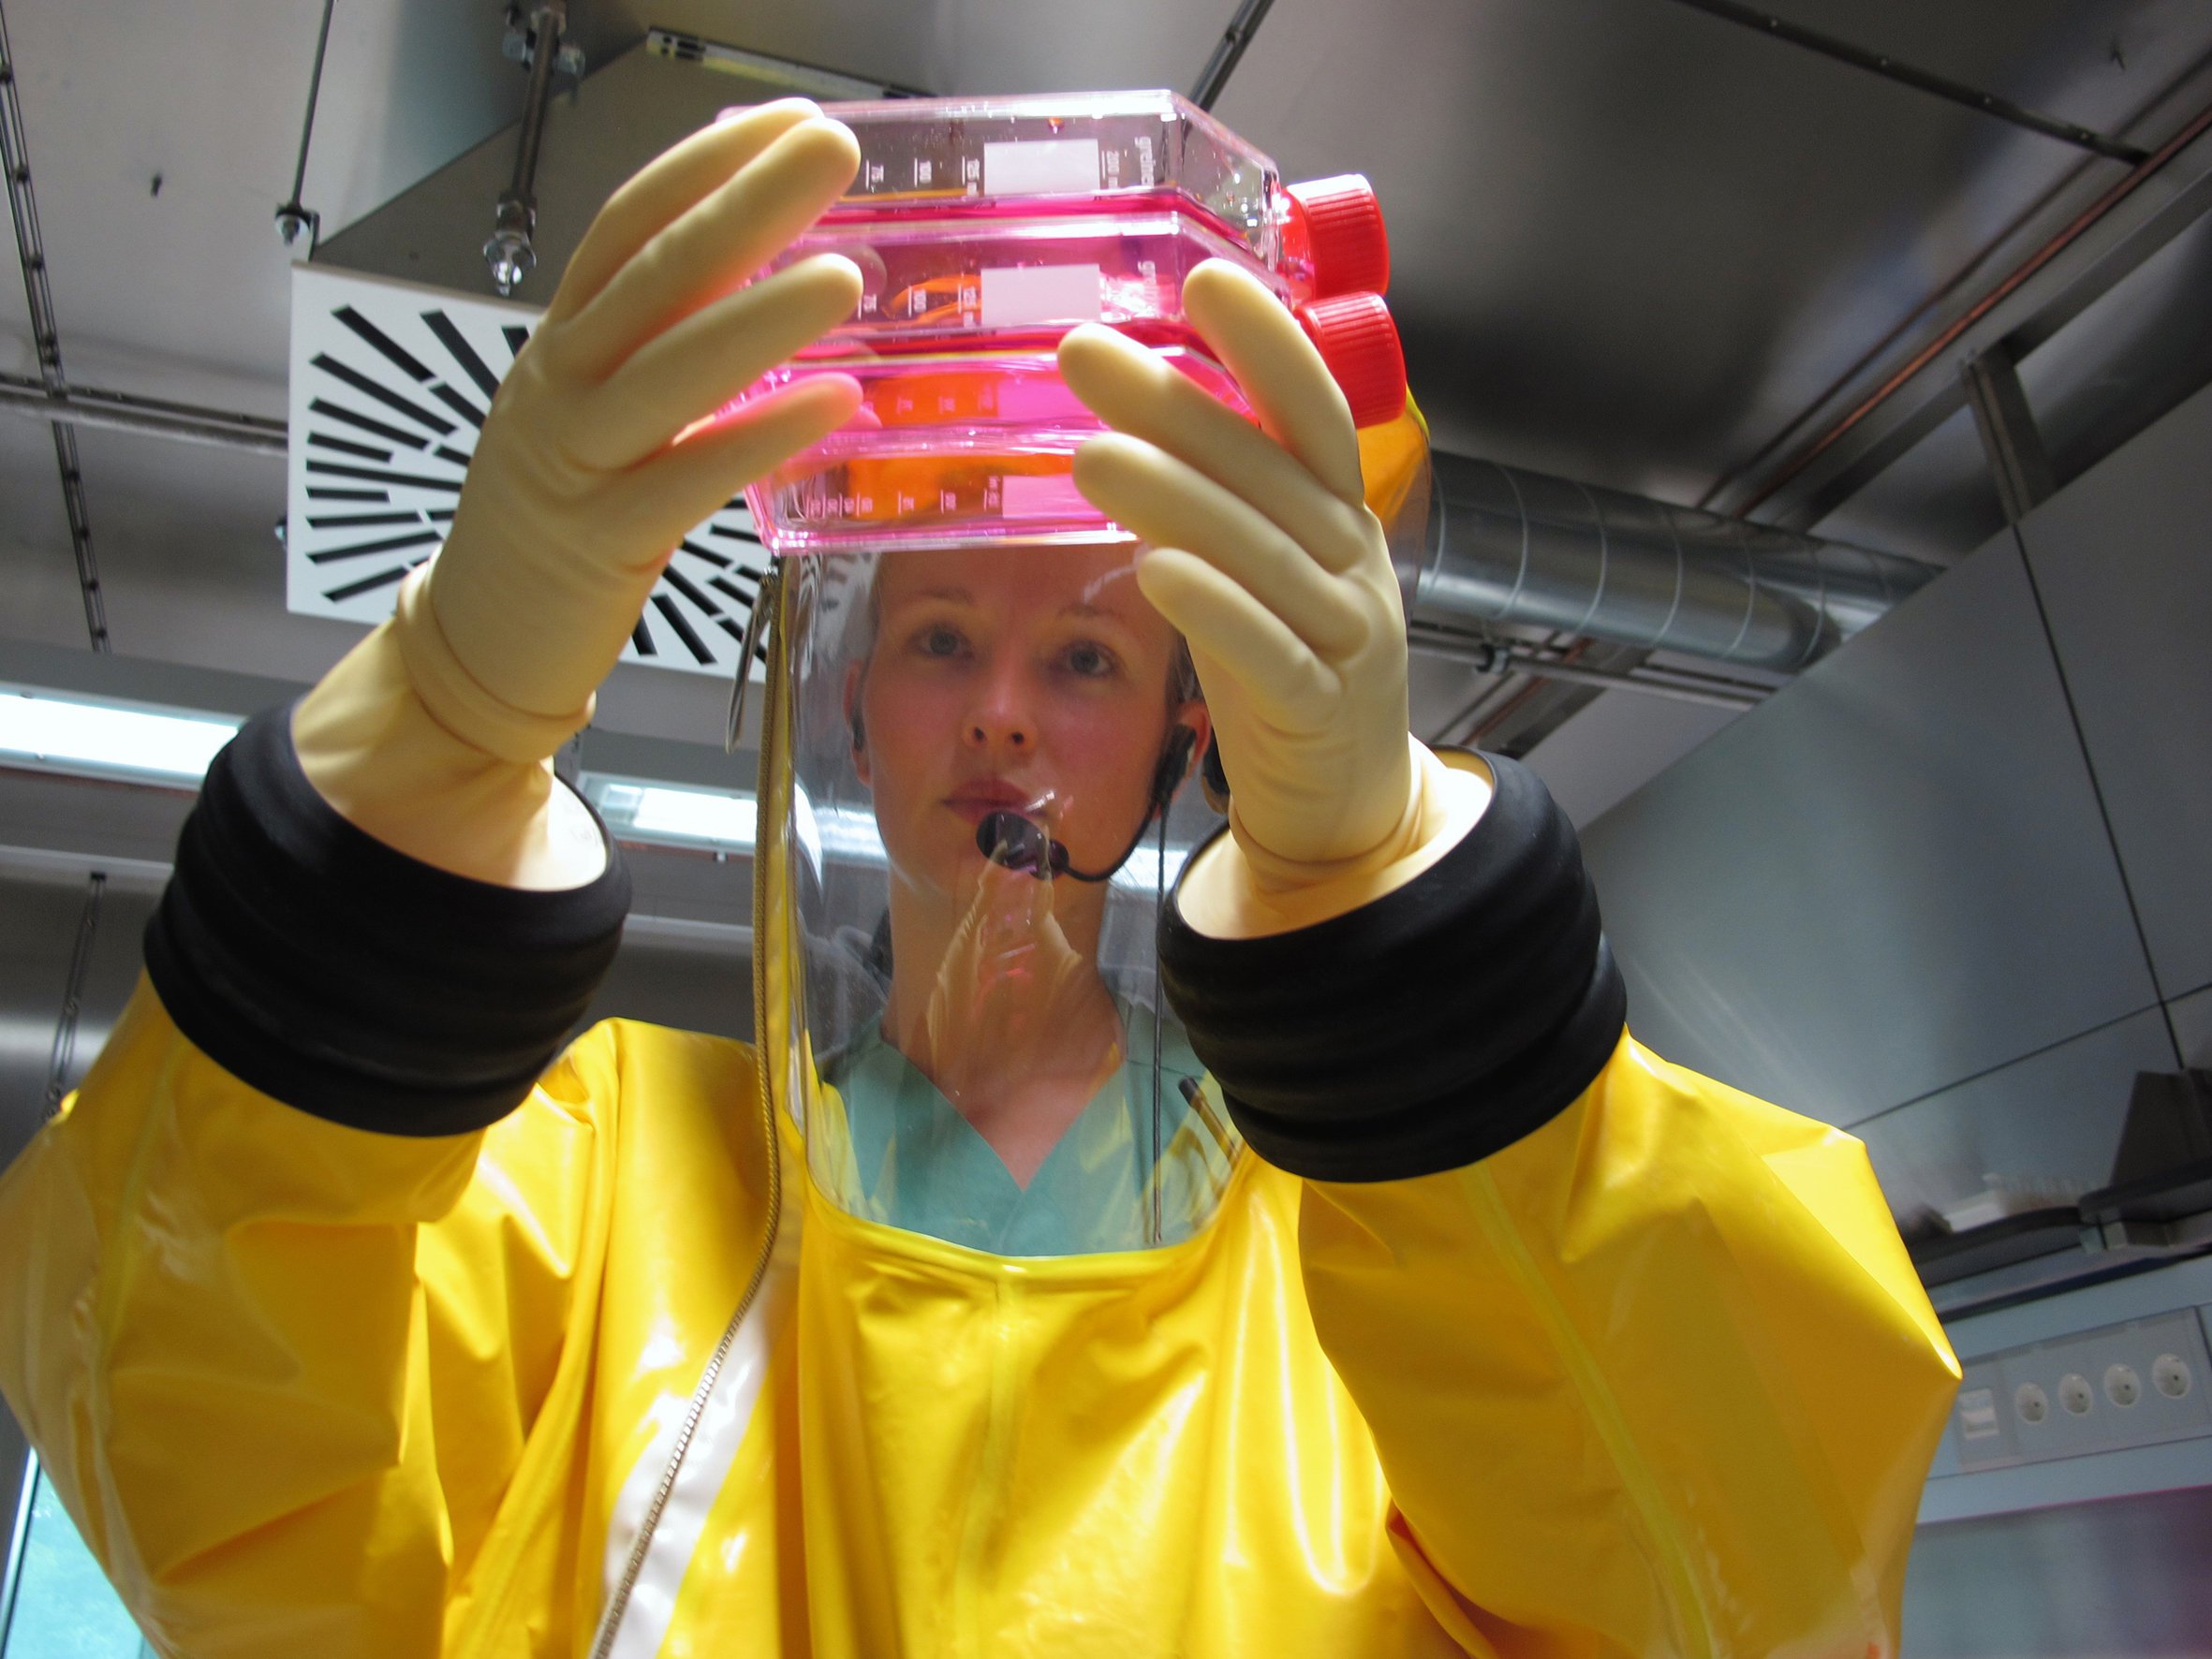 Viren-Forschung an der Universität Marburg: Die WHO hofft, dass spätestens im November ein Impfstoff gegen Ebola vorliegt.